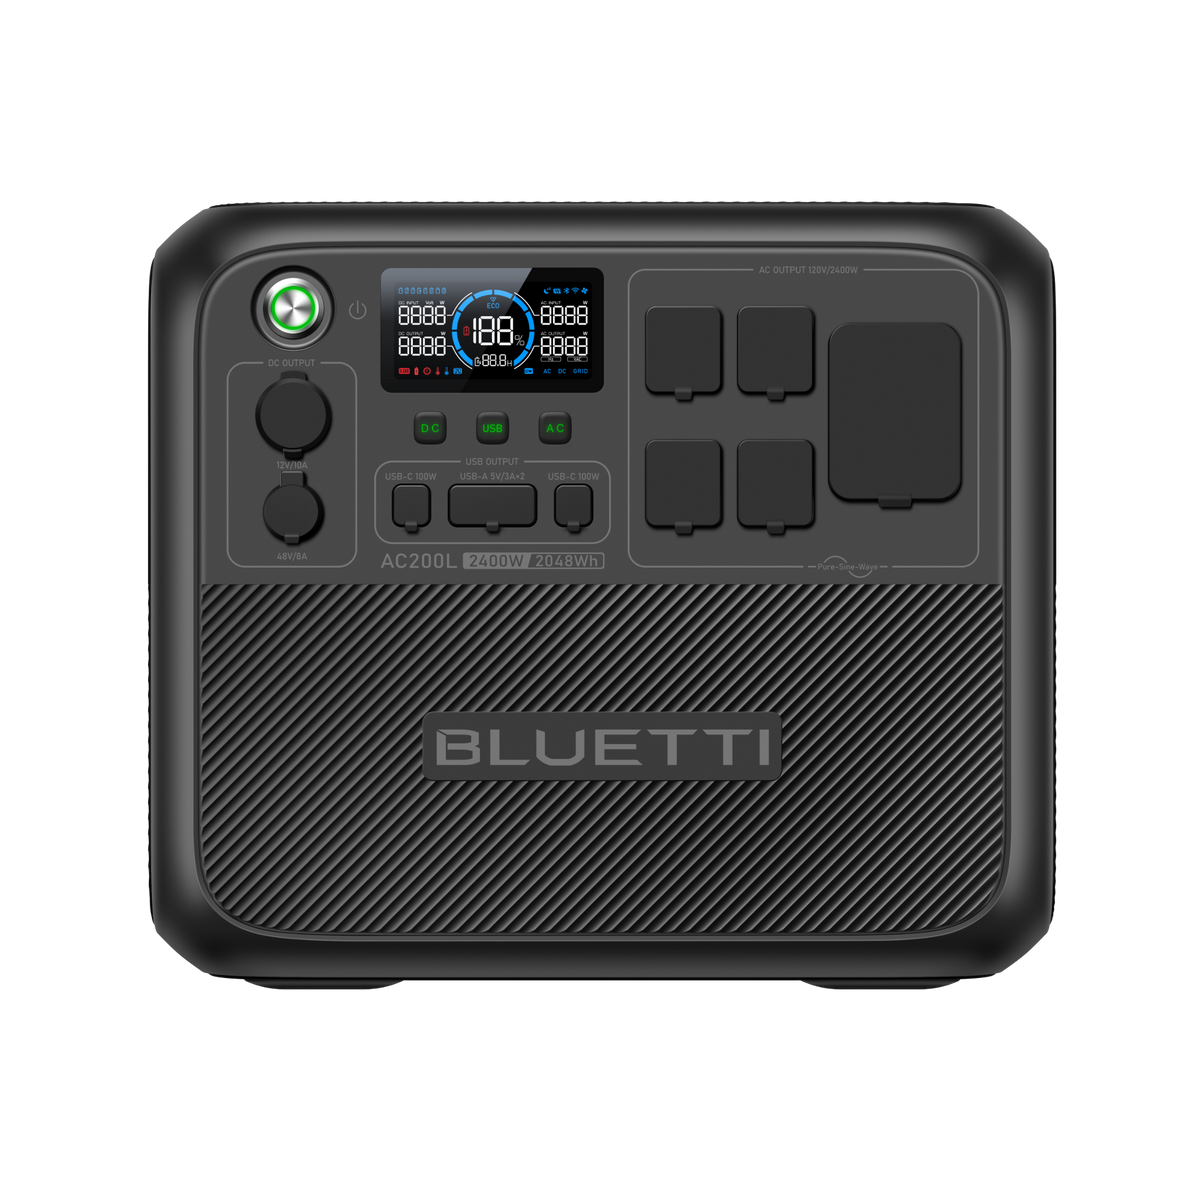 Bluetti EB3A Portable Solar Generator 268Wh Capacity With 120W